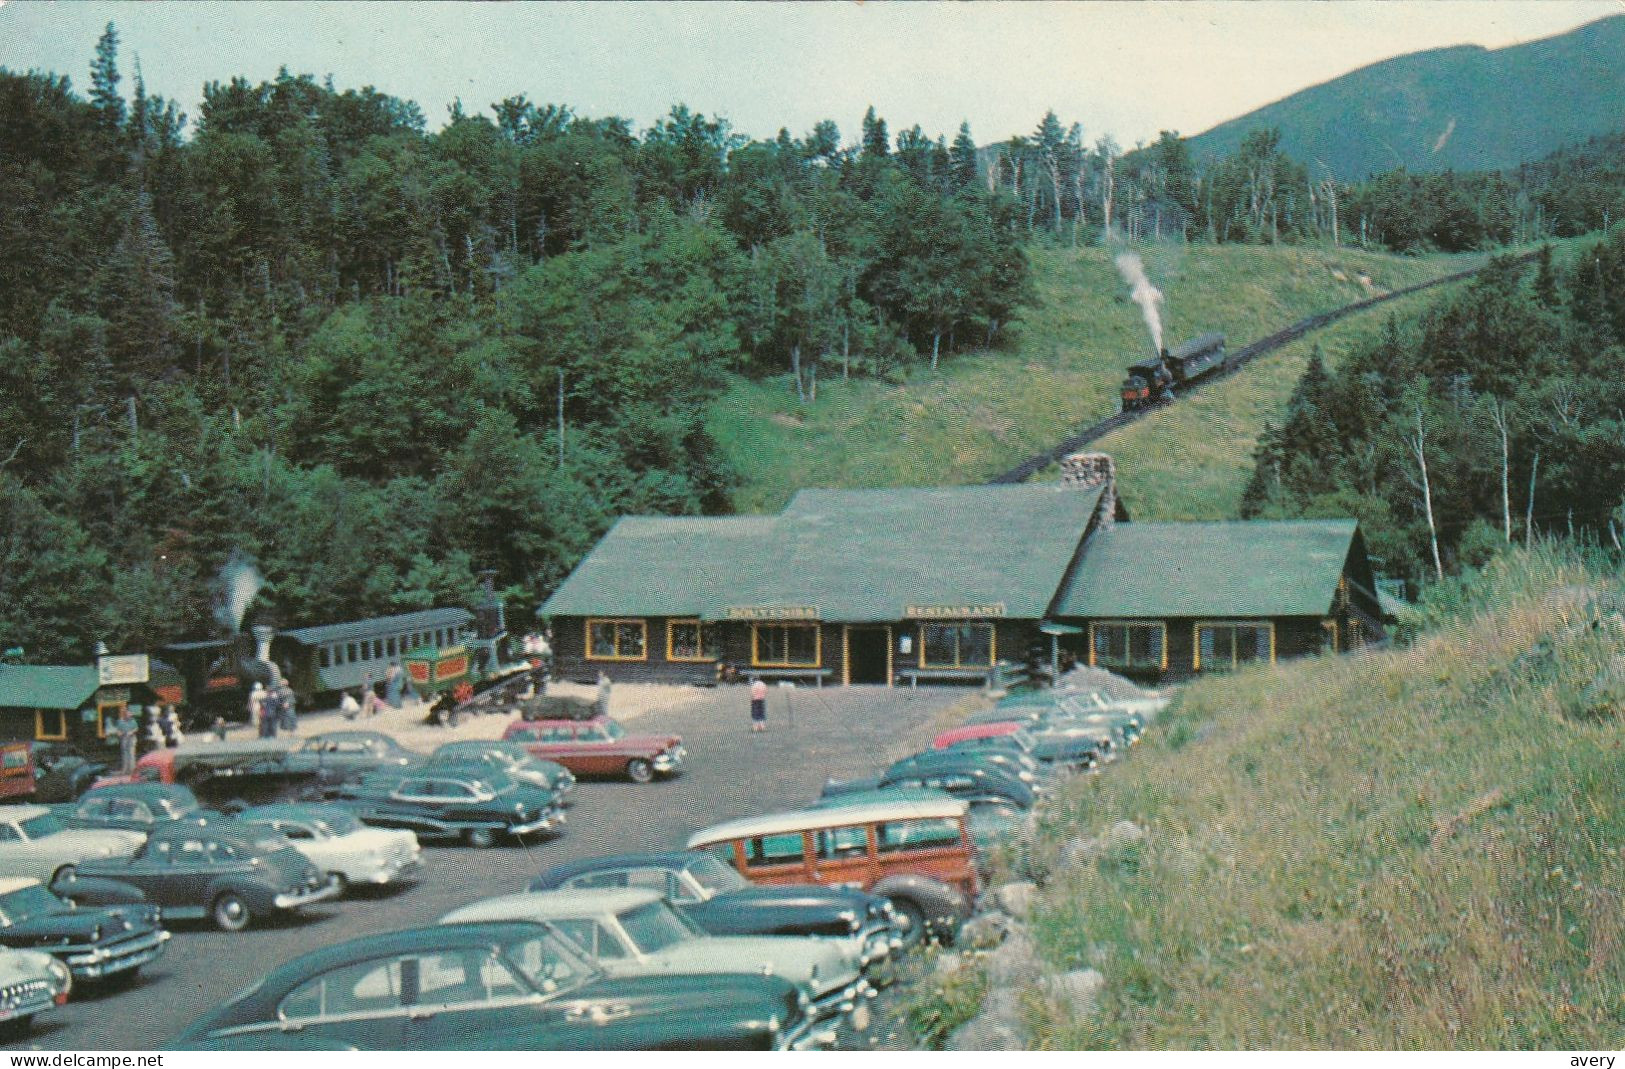 Base Station, Mount Washington, White Mountains, New Hampshire - White Mountains